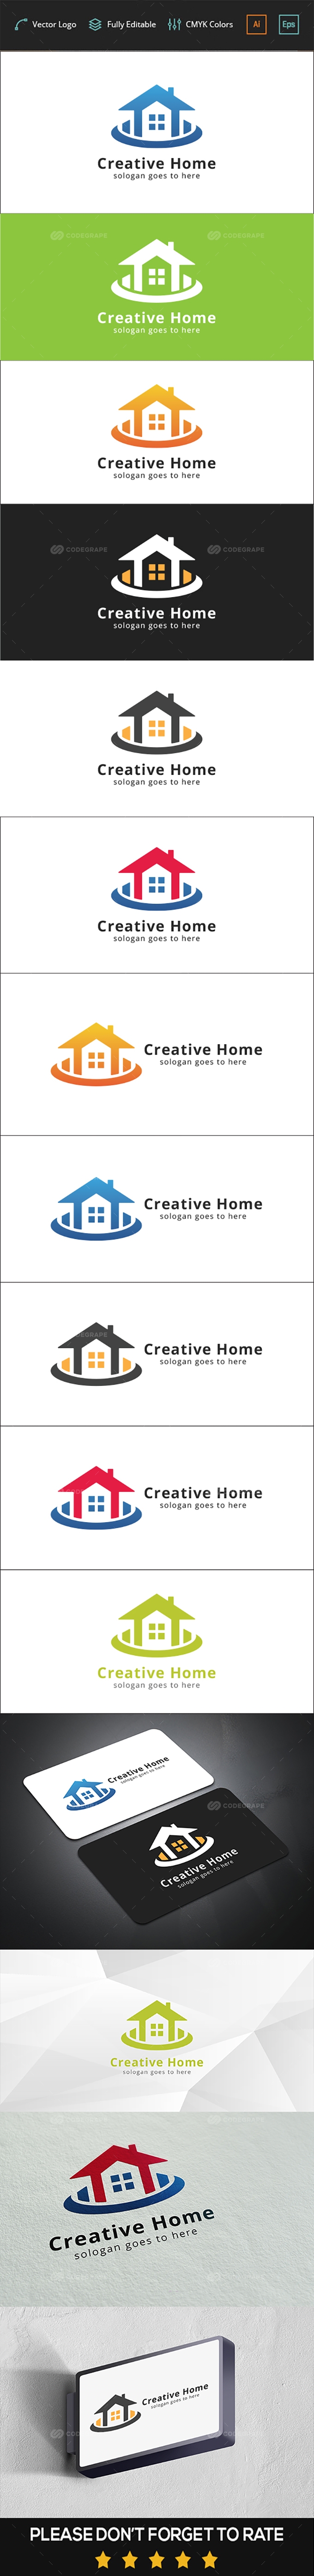 Creative Home Logo